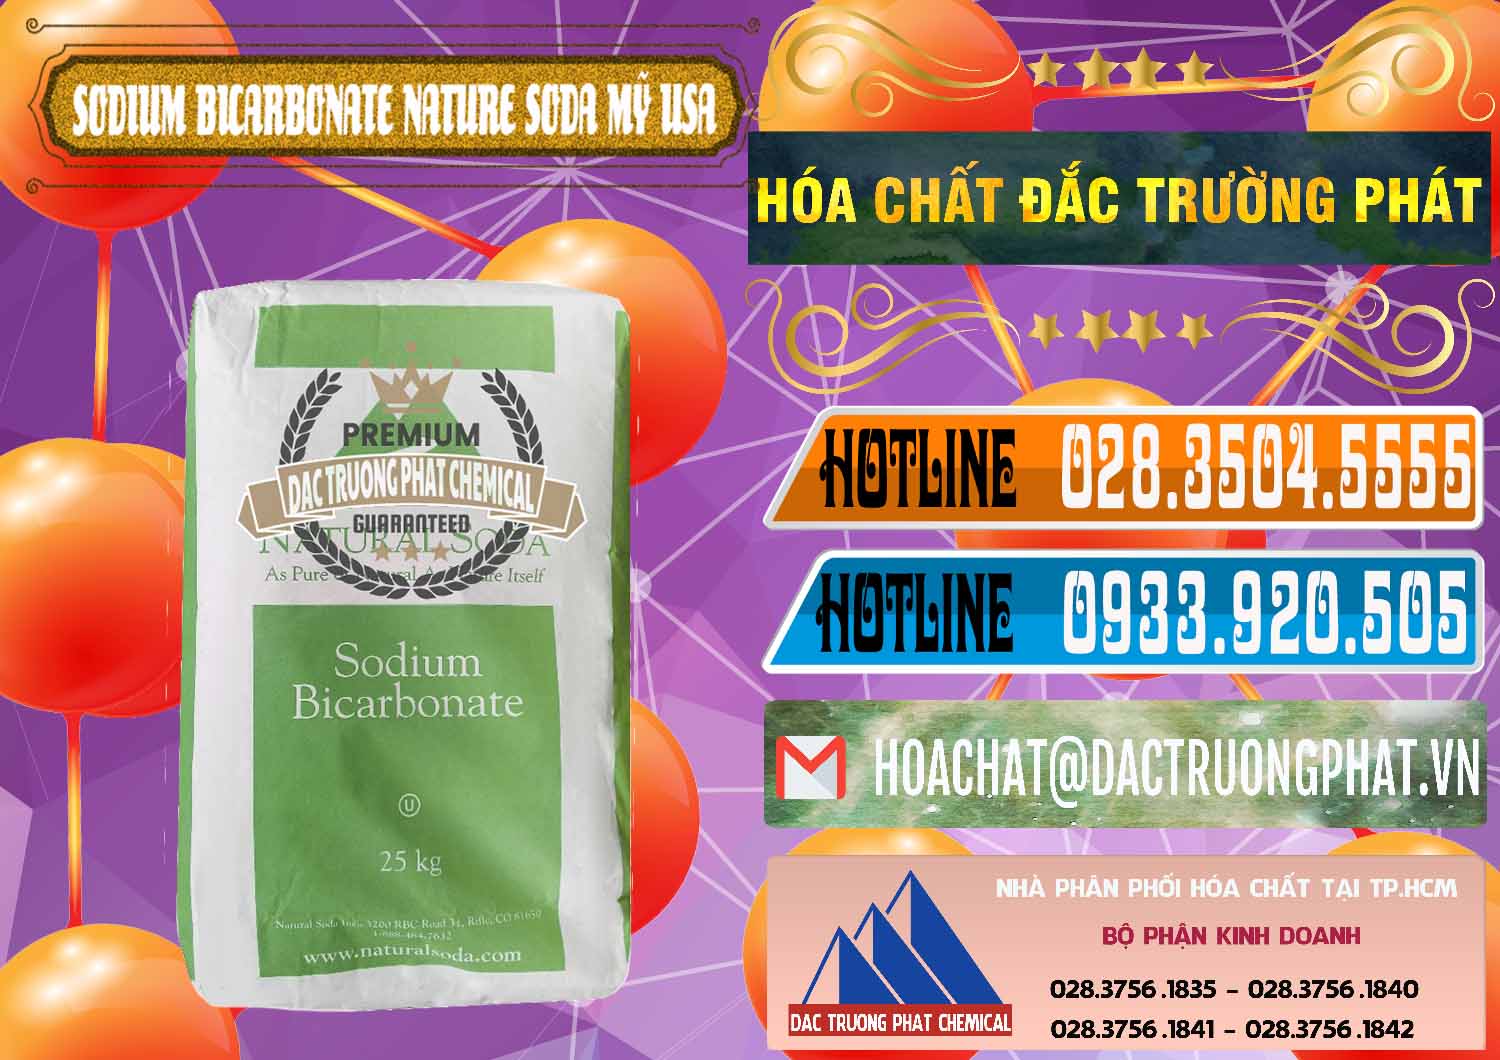 Nơi bán _ cung cấp Sodium Bicarbonate – Bicar NaHCO3 Food Grade Nature Soda Mỹ USA - 0256 - Cty chuyên bán ( phân phối ) hóa chất tại TP.HCM - stmp.net